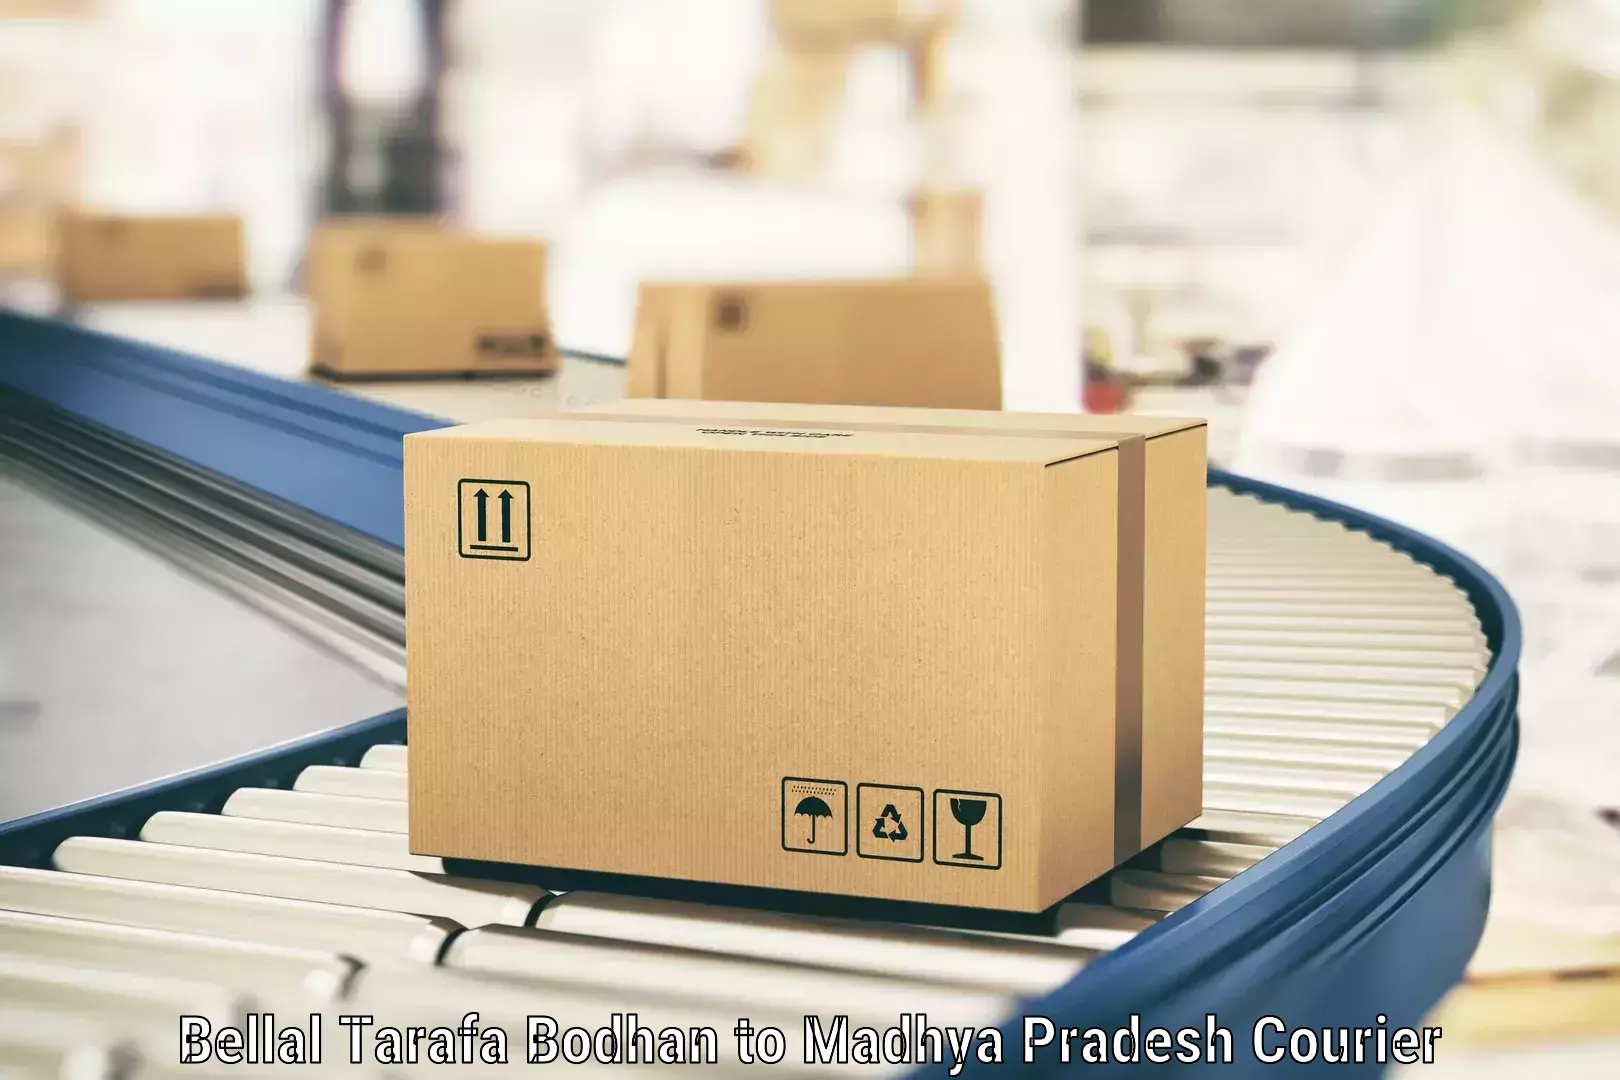 Large package courier Bellal Tarafa Bodhan to Amarkantak